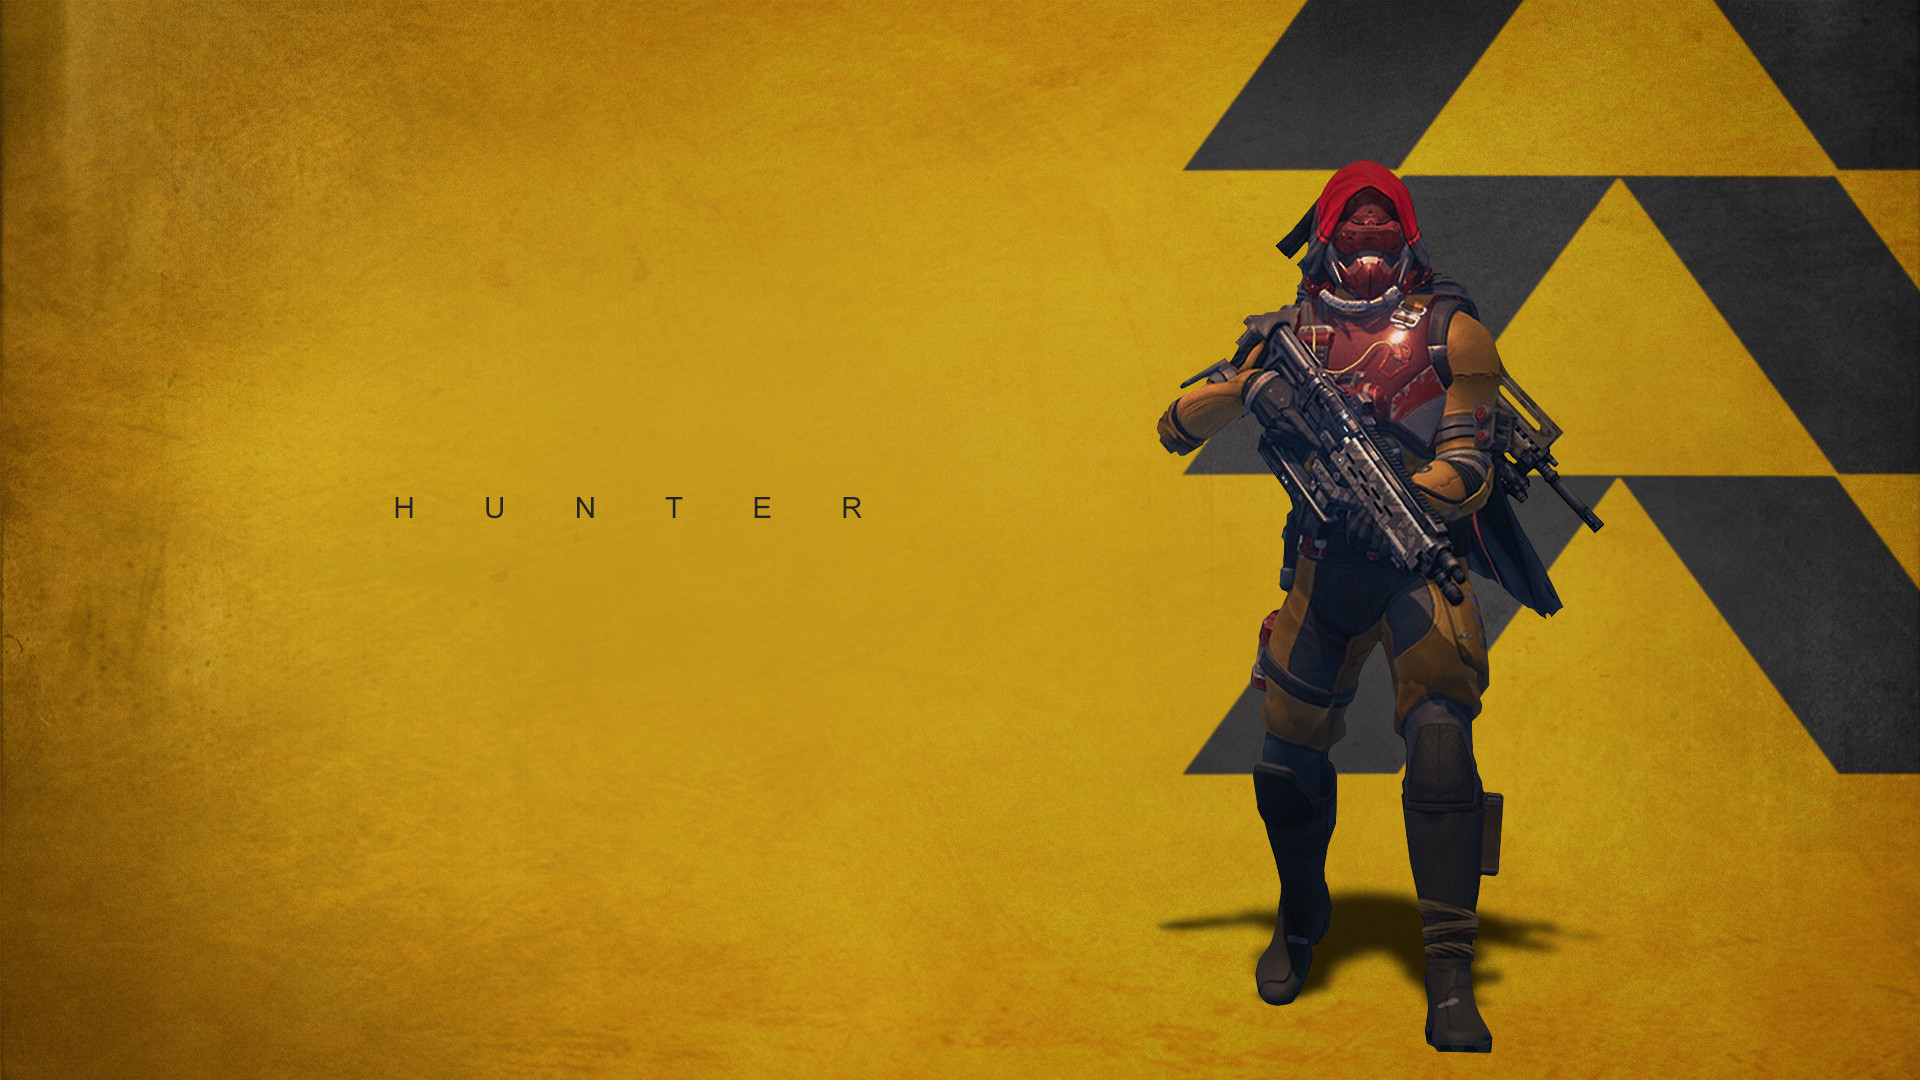 1920x1080 Hunter - Top FPS Game 2014 Destiny HD Wallpaper | Games | Pinterest | Fps  games and Destiny hunter